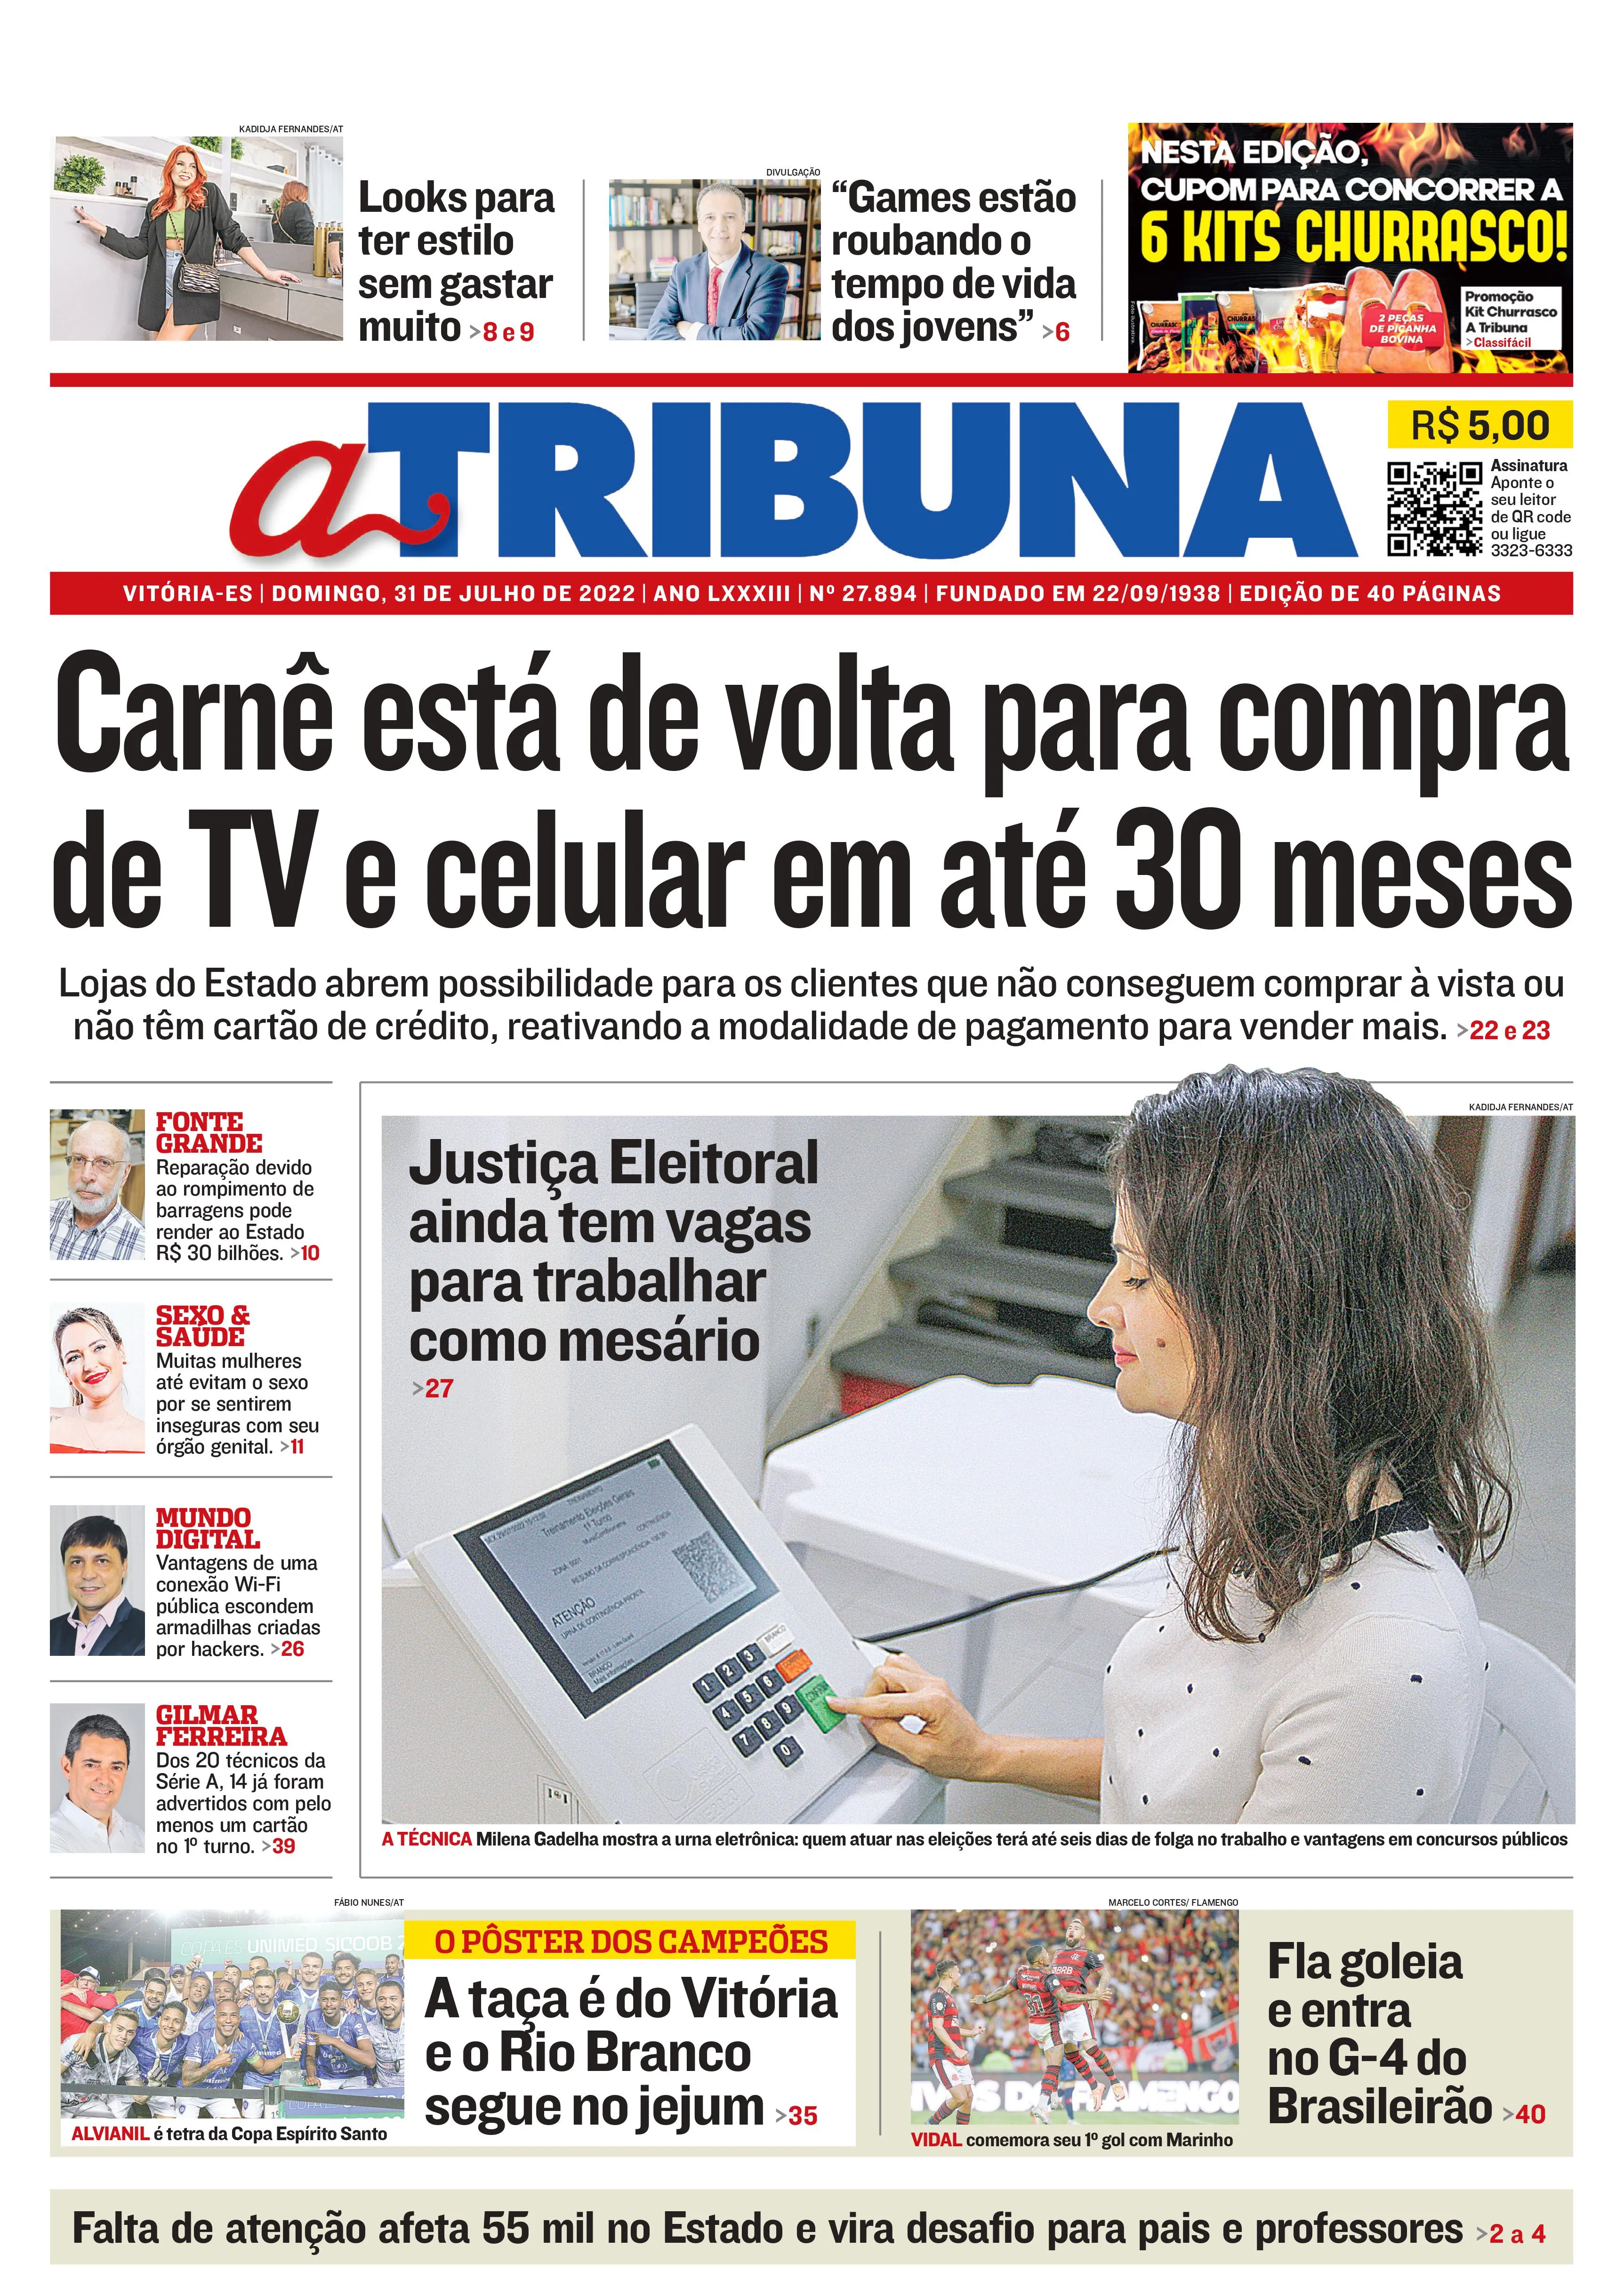 Imagem ilustrativa da imagem Confira os destaques do Jornal A Tribuna deste domingo